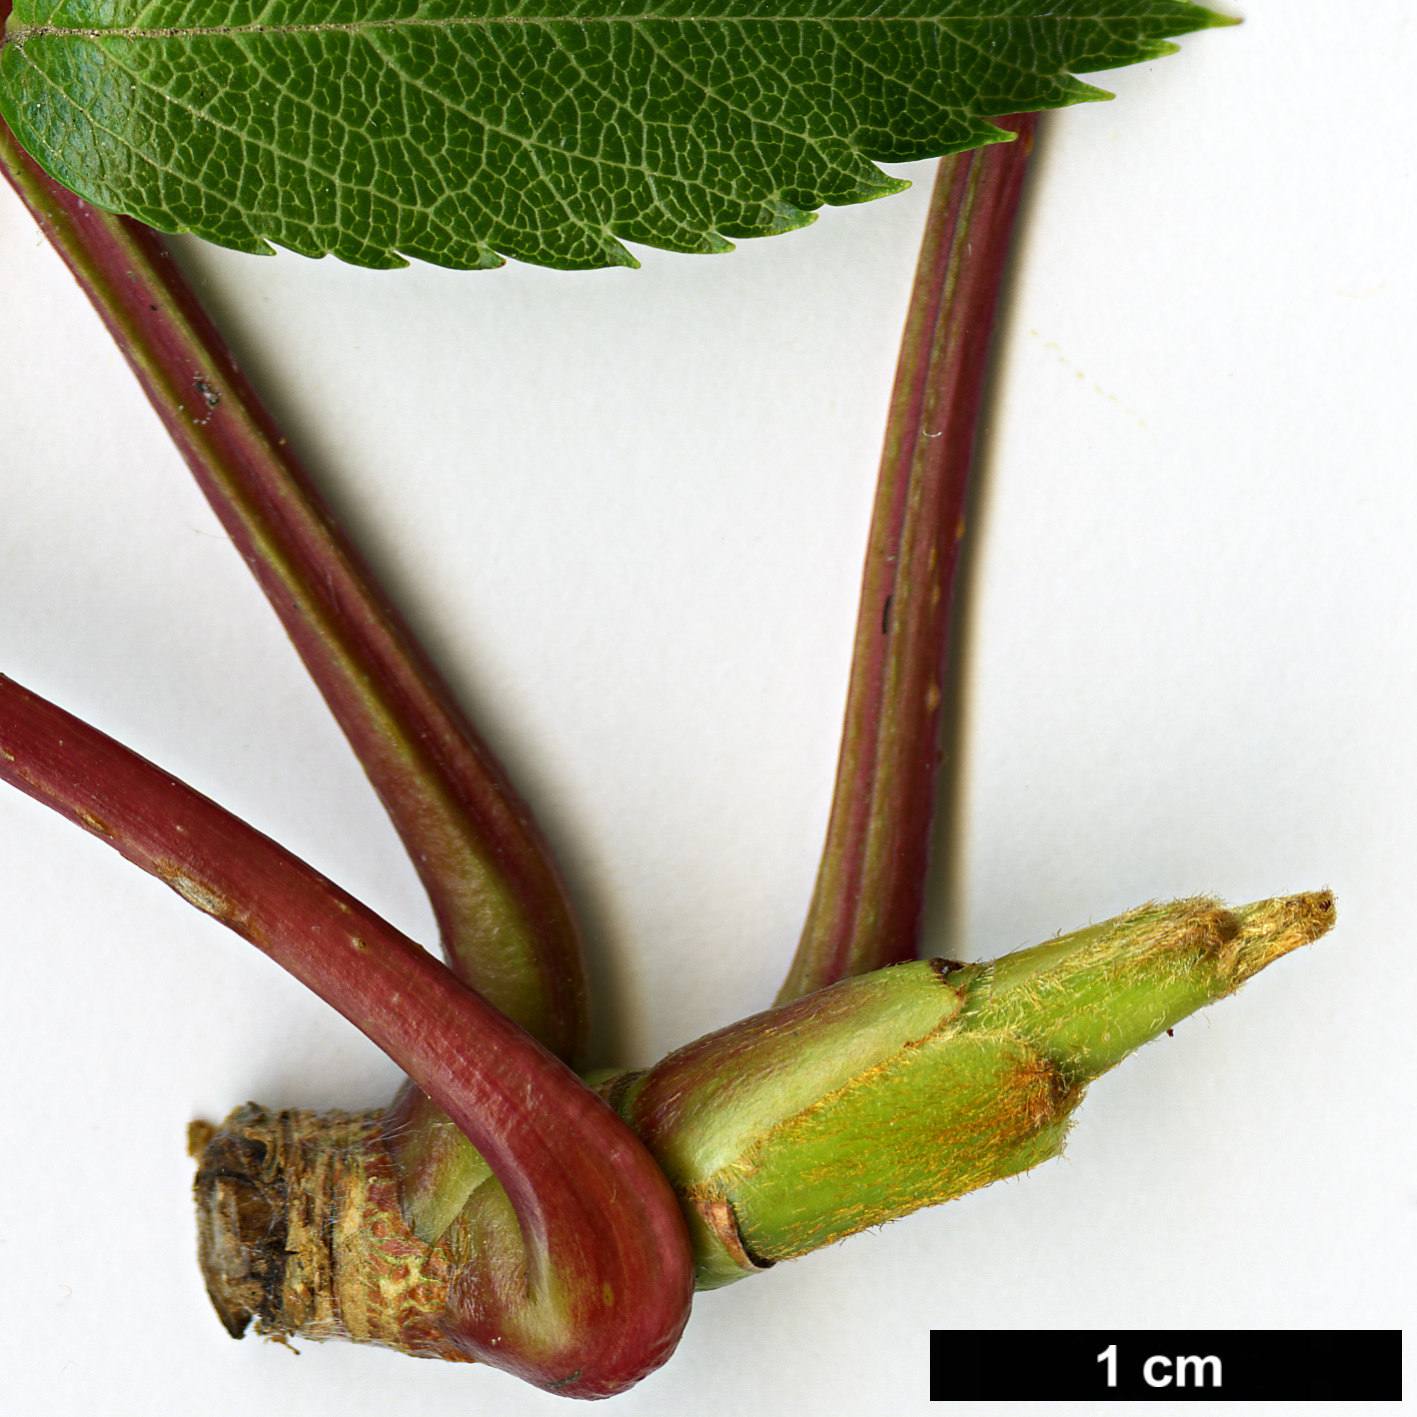 High resolution image: Family: Rosaceae - Genus: Sorbus - Taxon: commixta - SpeciesSub: var. rufoferruginea